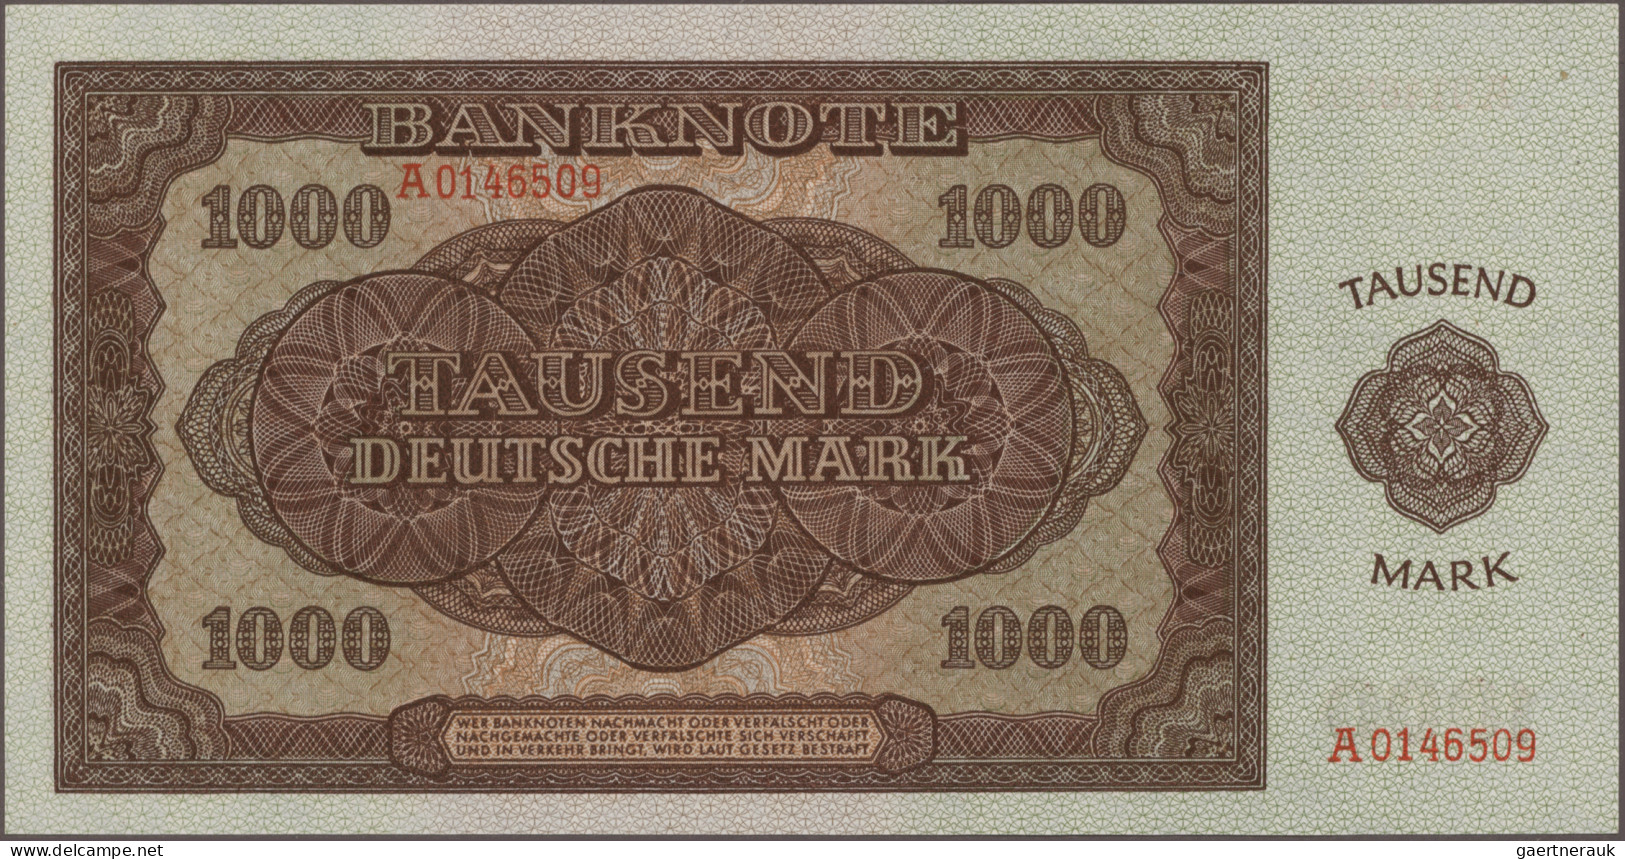 Deutschland - DDR: Deutsche Notenbank und Staatsbank der DDR, Lot mit 51 Banknot